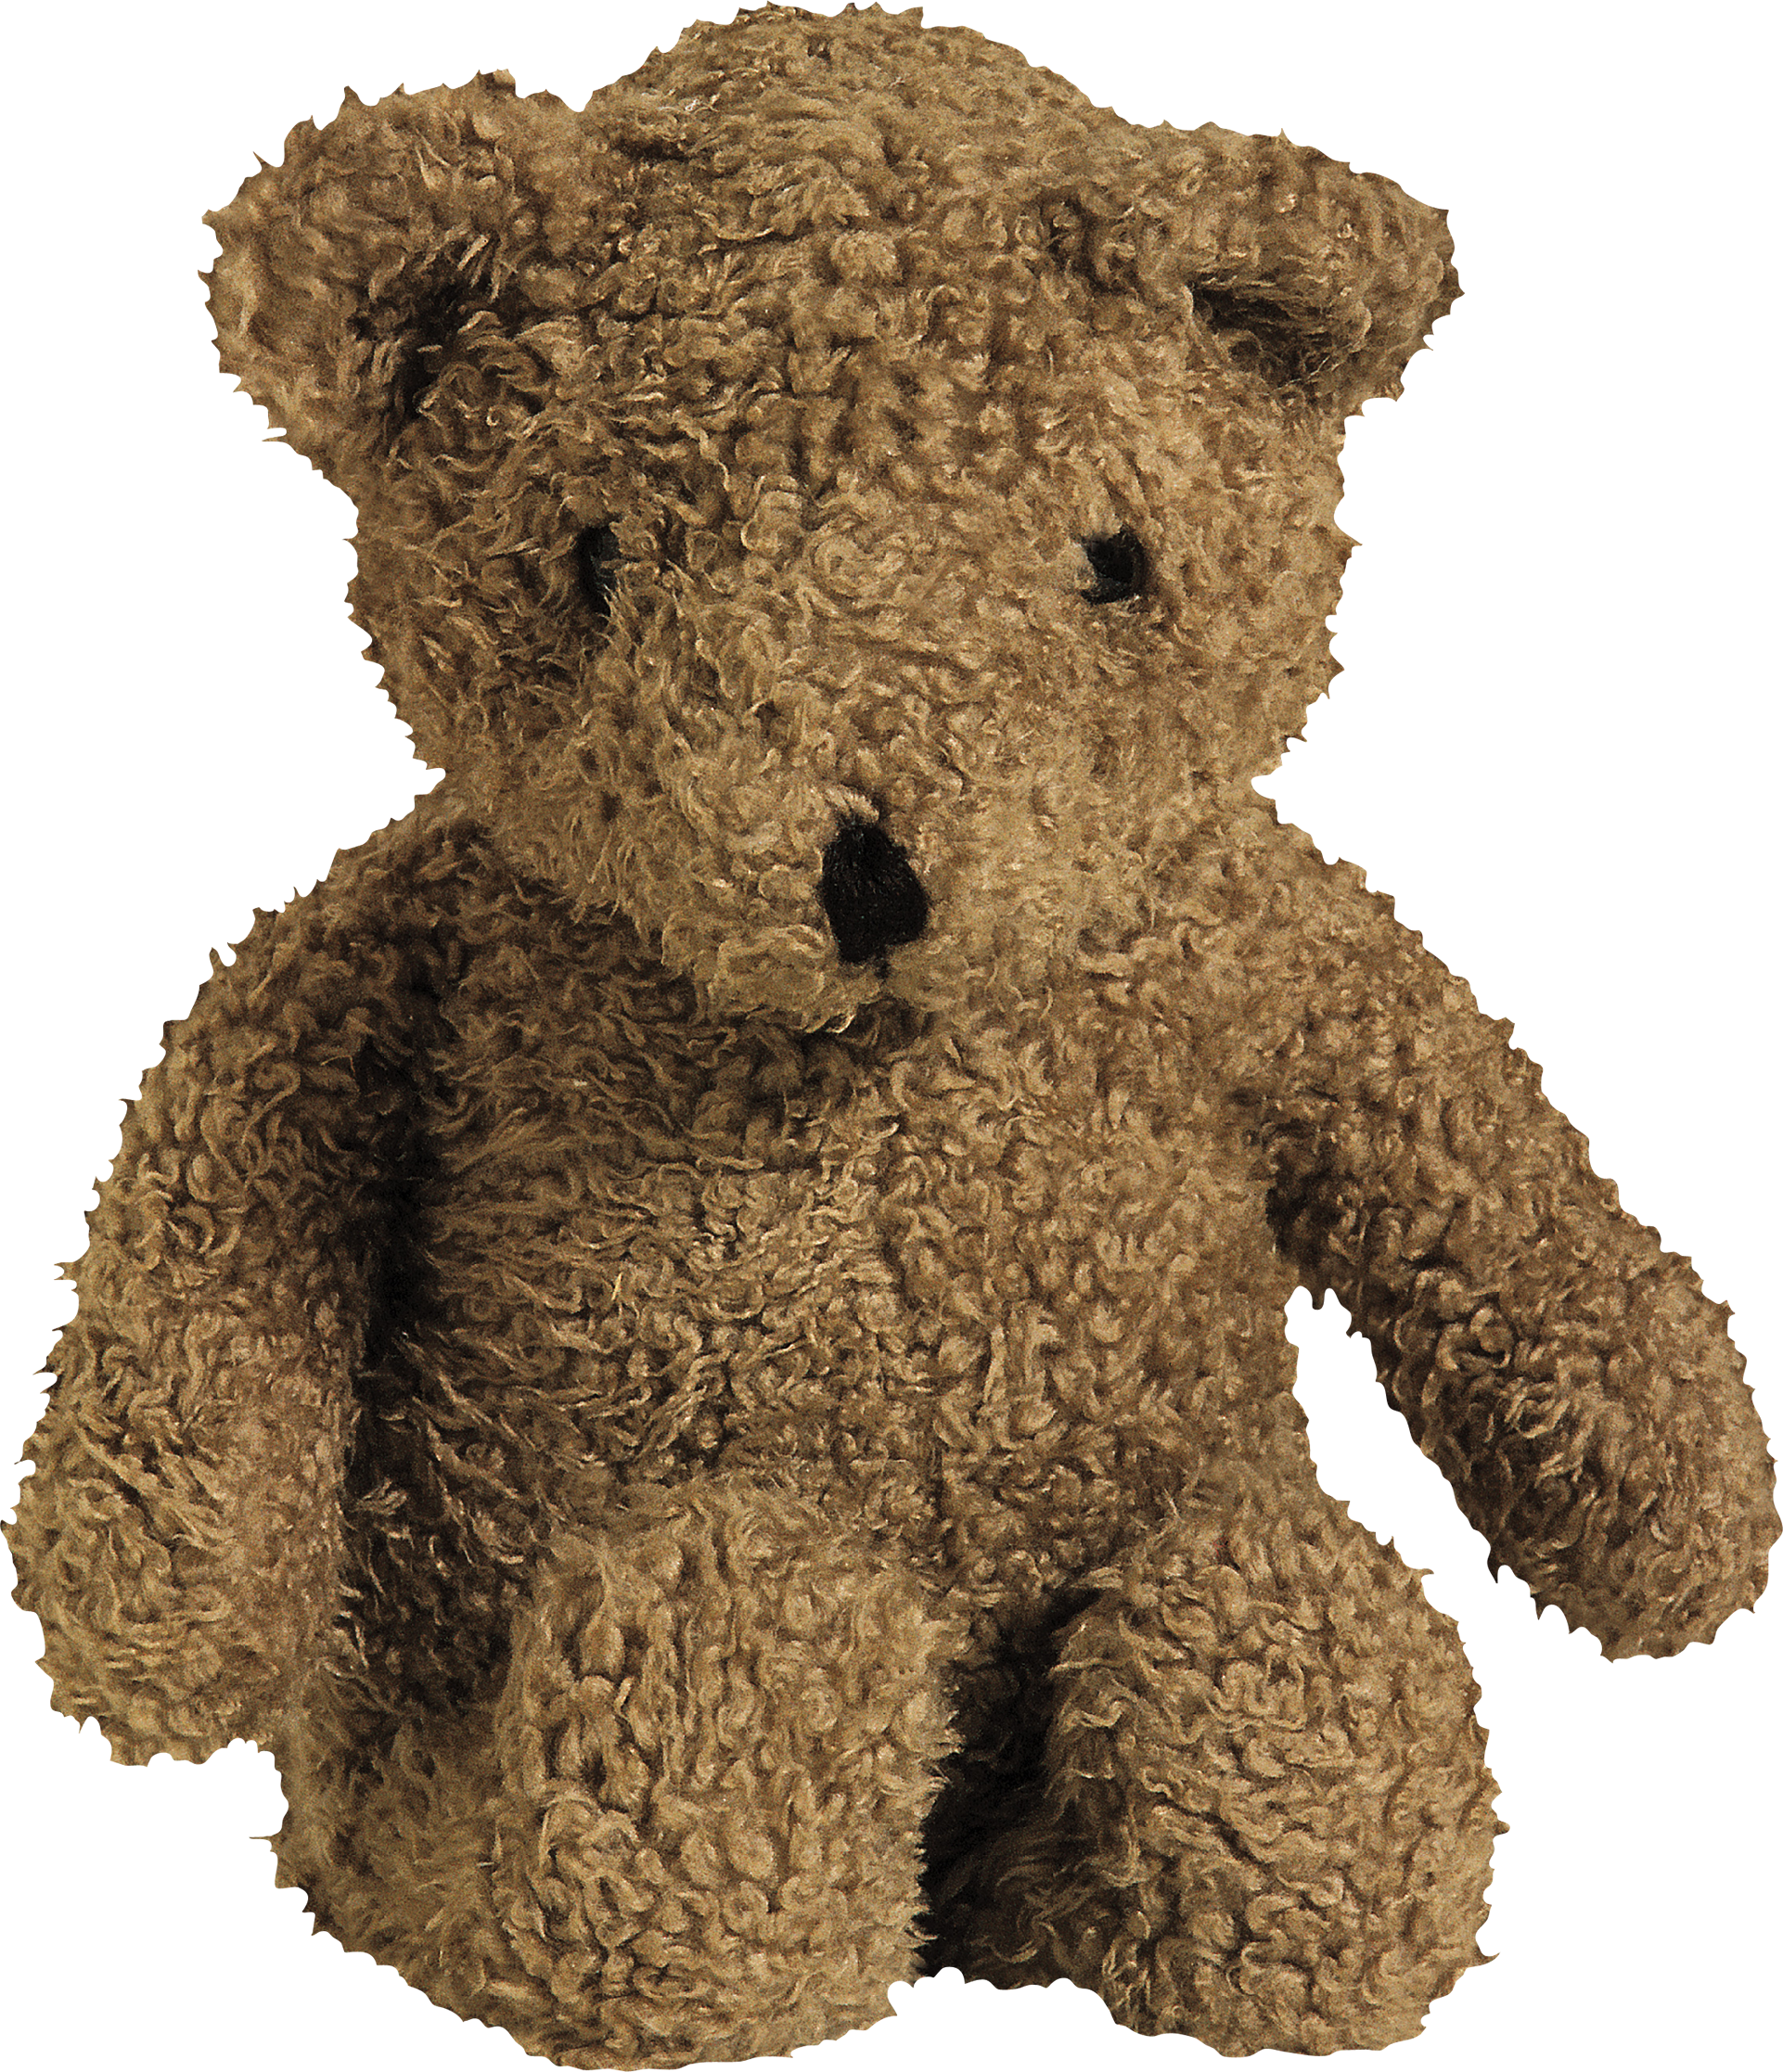 toy Bear PNG image free Download image